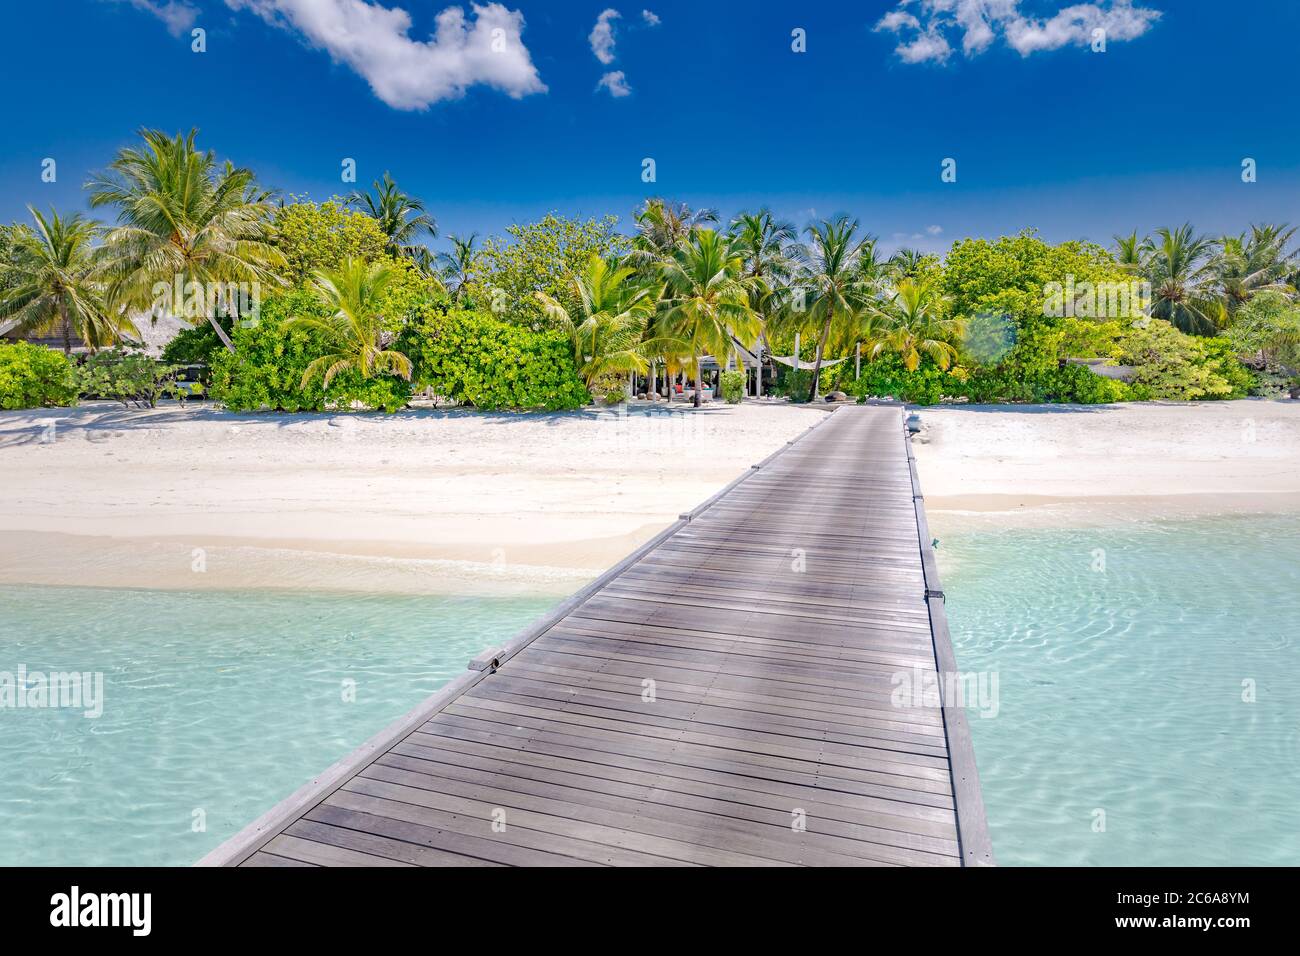 Wunderschöner Strand mit Steg, Palmen und launischen Himmel. Sommerurlaub Reise Urlaub Hintergrund. Malediven Paradies Strand Luxus Urlaub Sommer Stockfoto